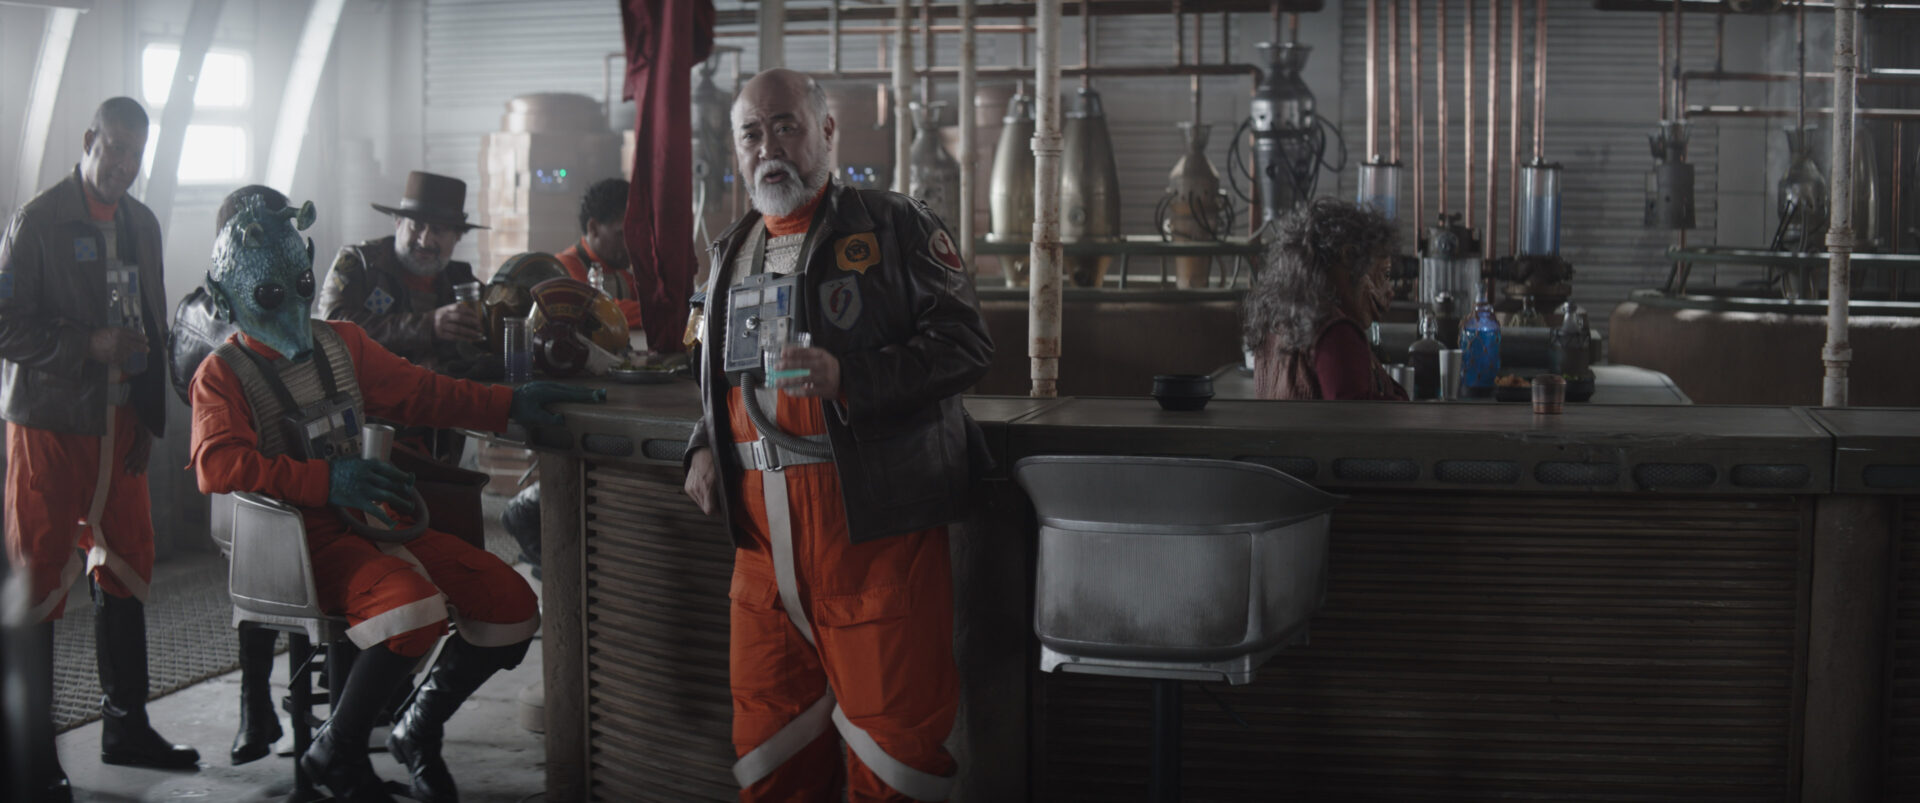 Dave Filoni e il cameo tra i piloti della Nuova Repubblica nel finale di stagione; Cinematographe.it